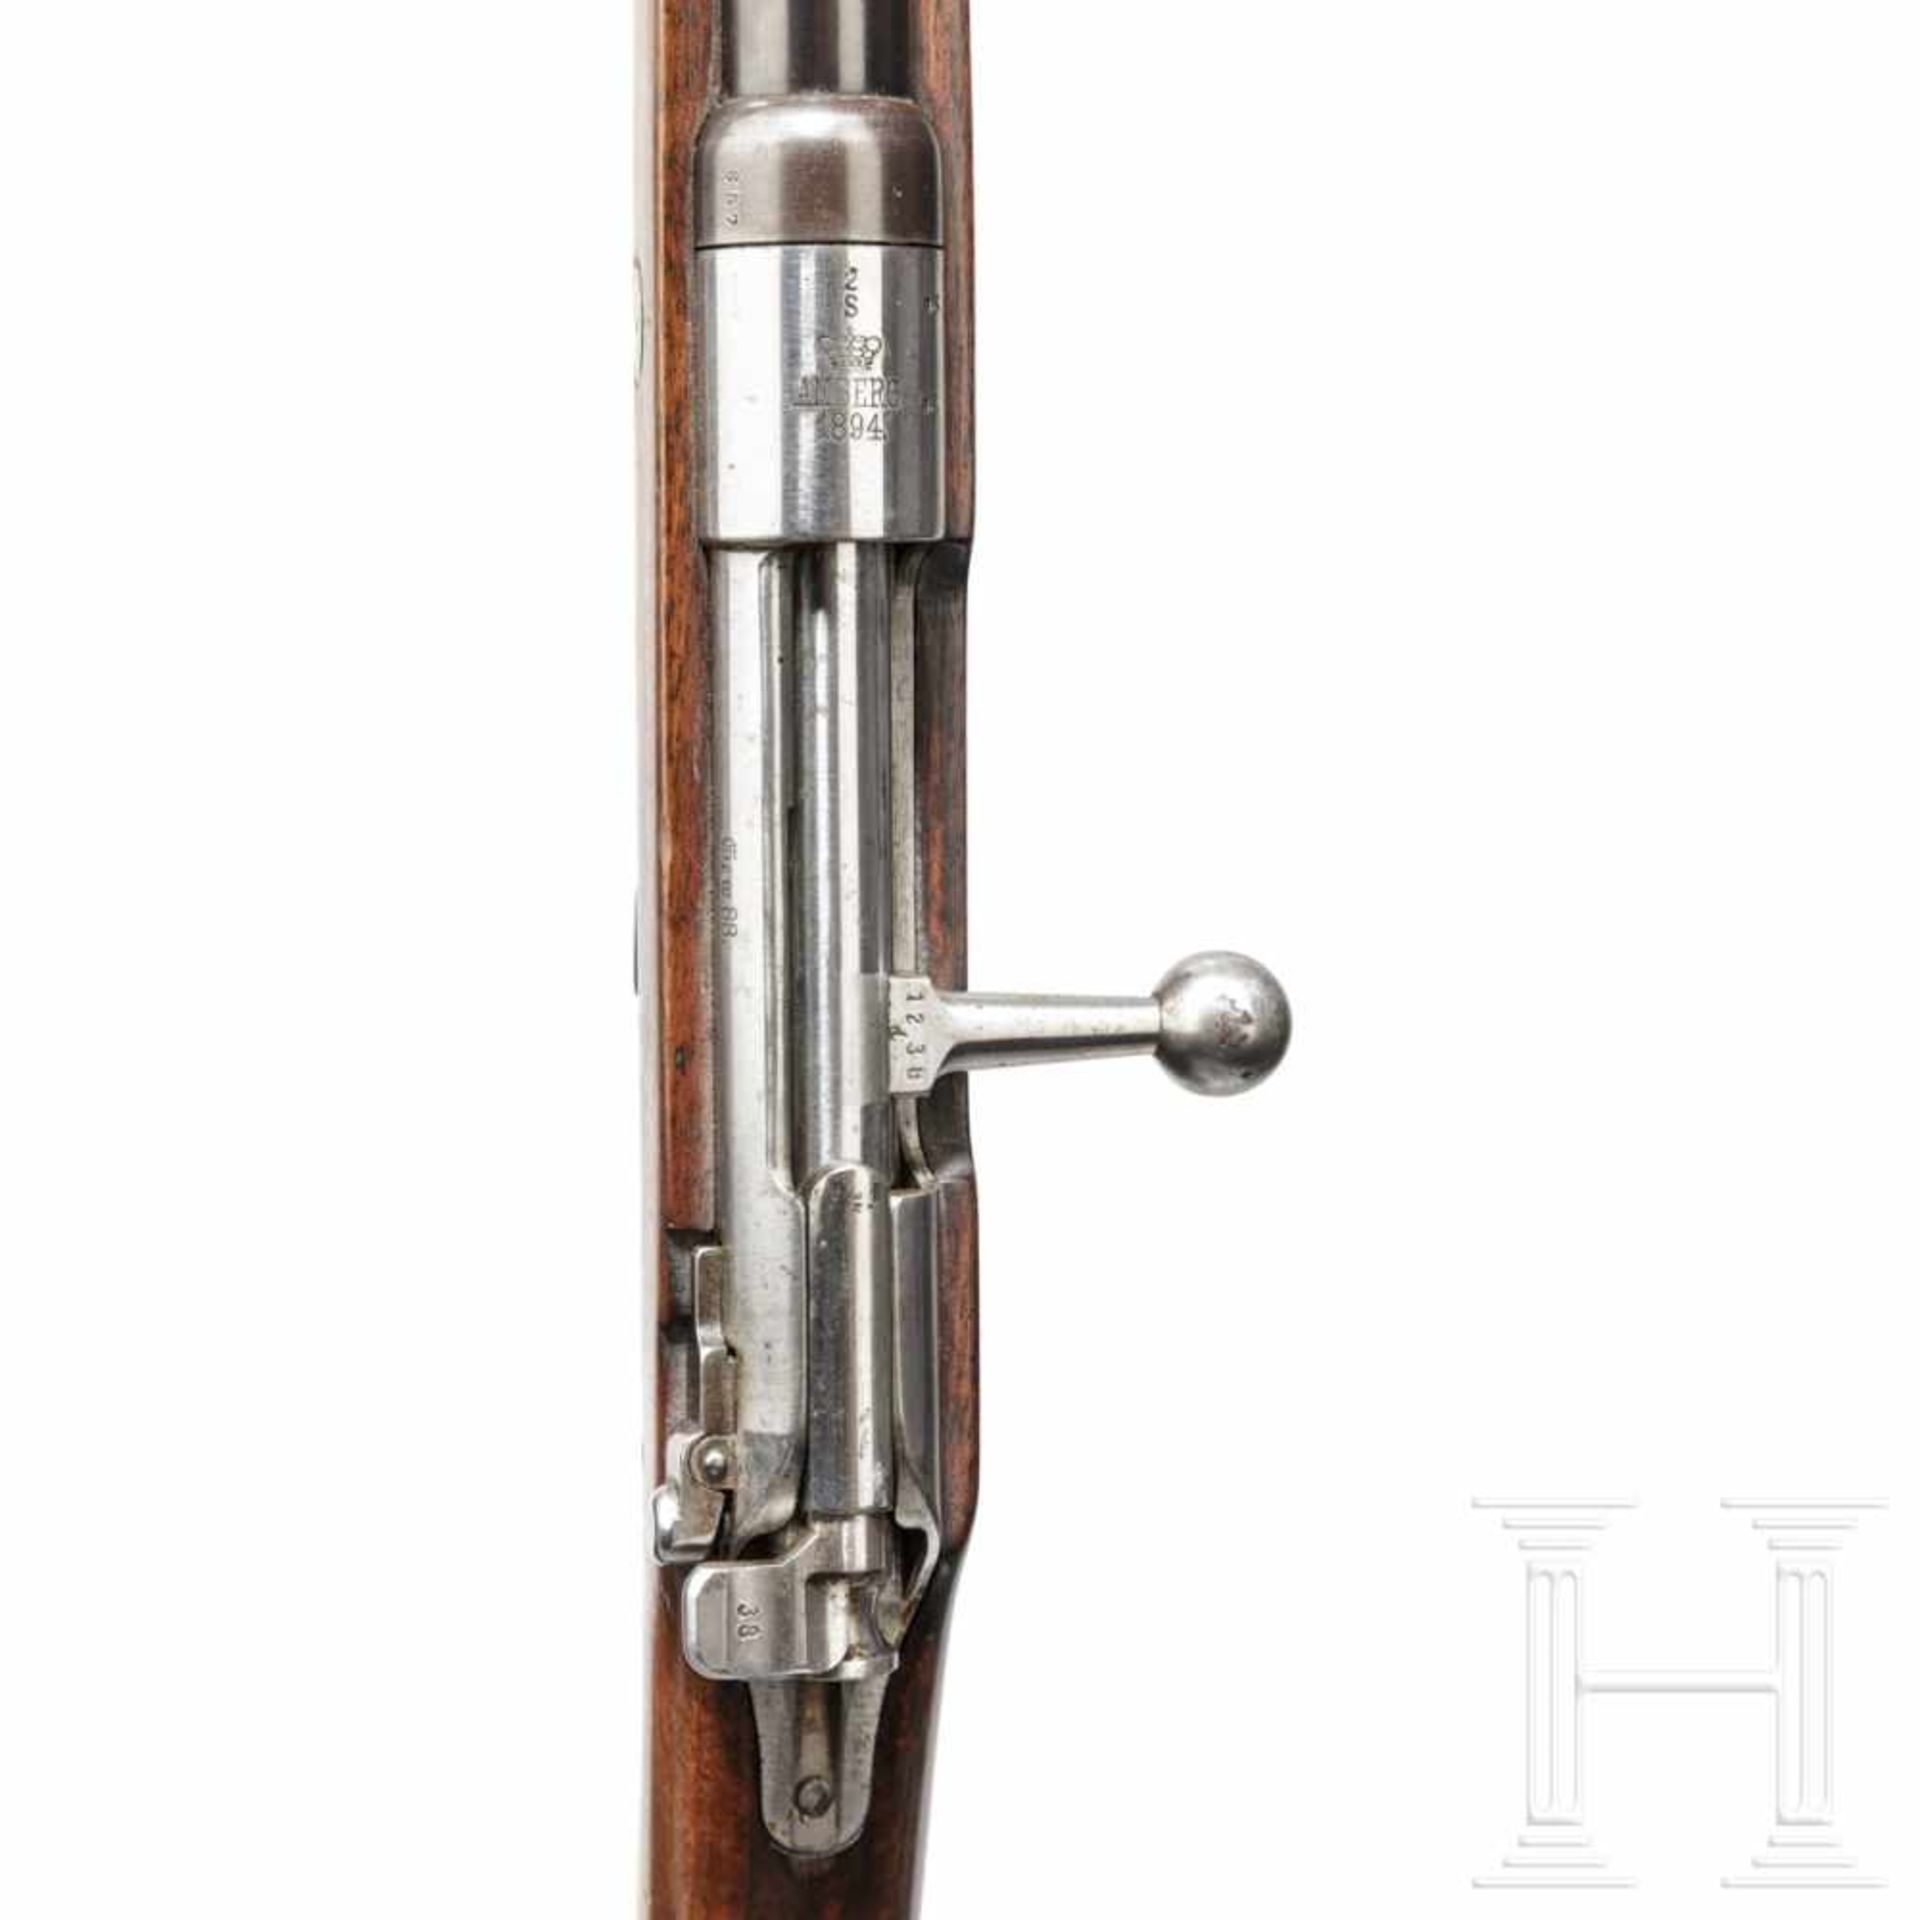 Gewehr 88, Amberg 1894Kal. 8x57 IS, Nr. 657, Nicht nummerngleich. Blanker Lauf. Dt. Beschuss. - Bild 3 aus 3